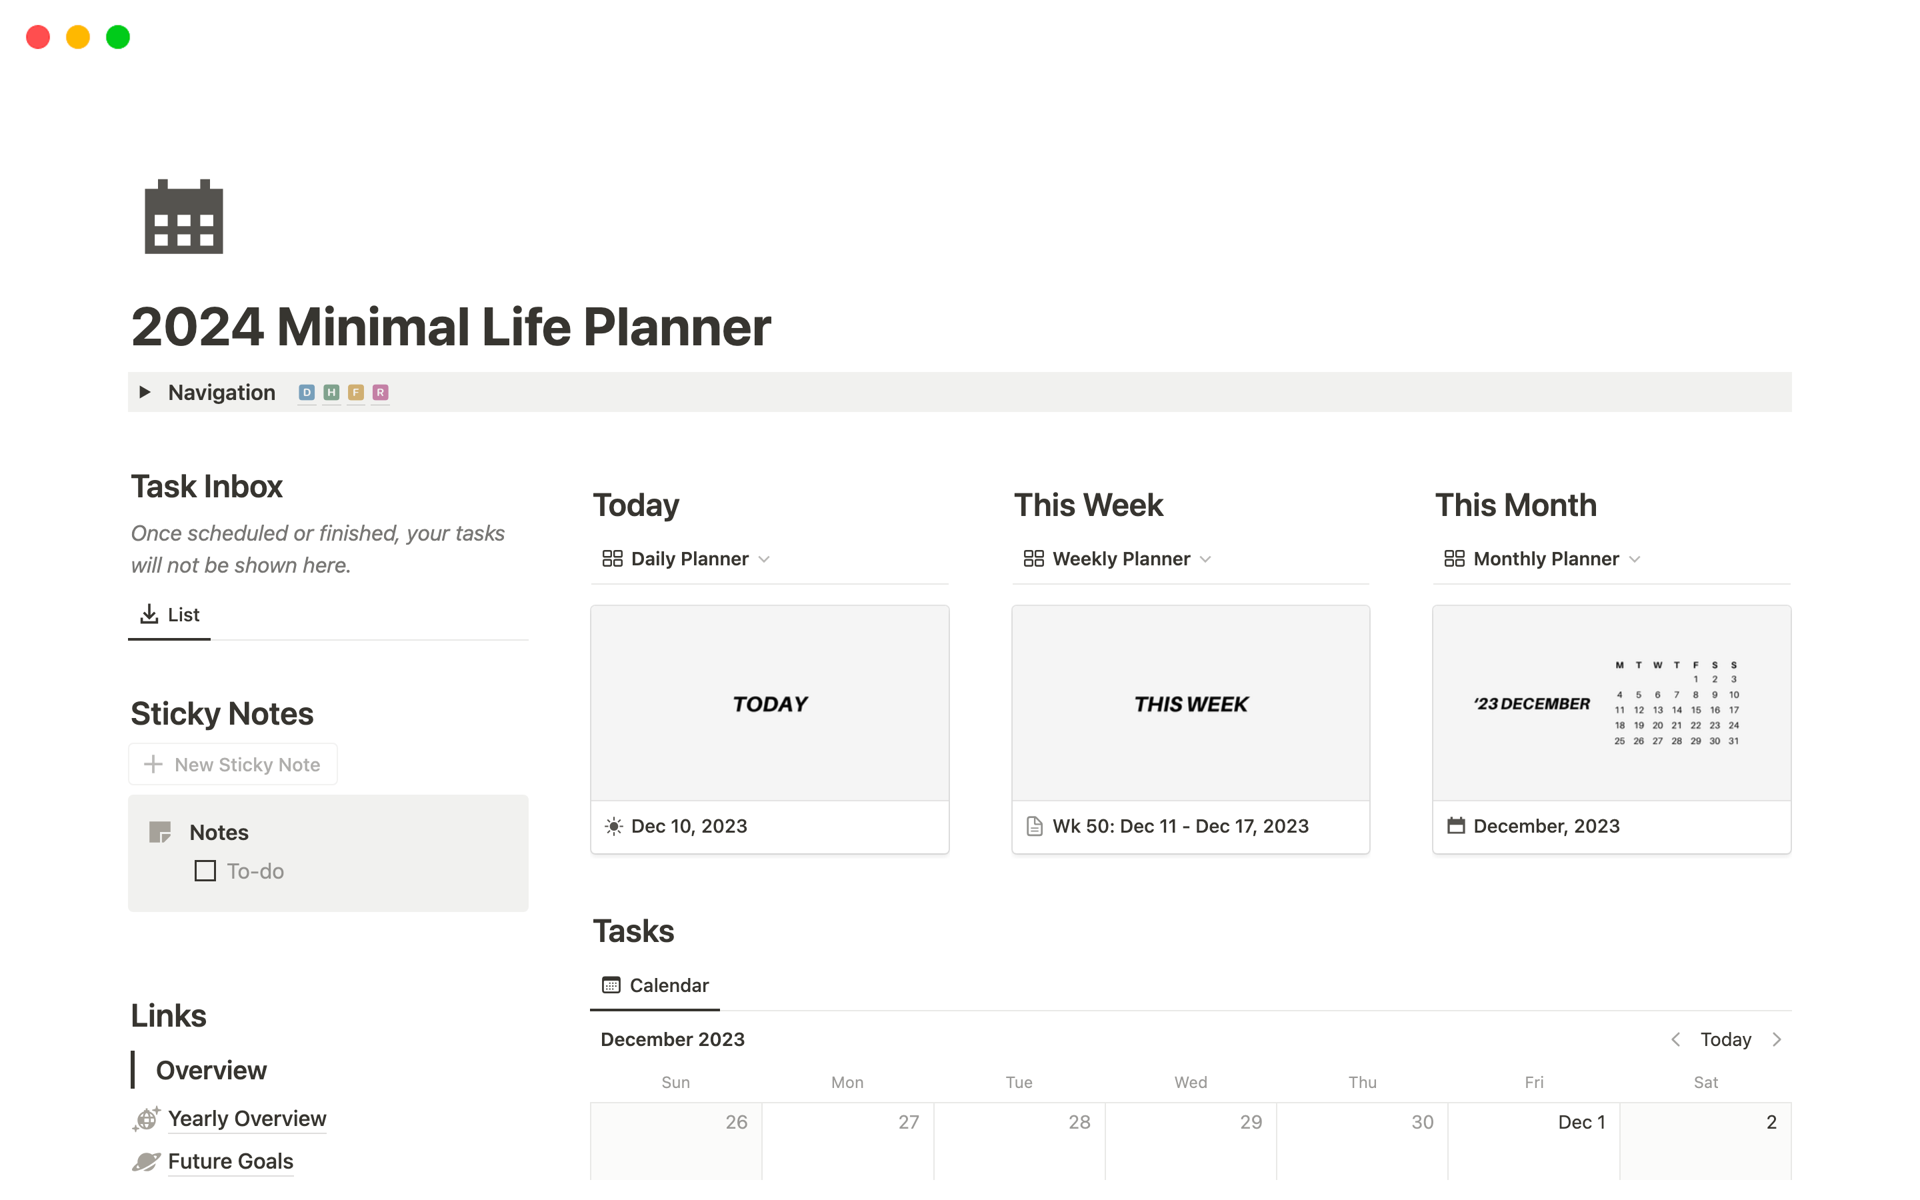 Vista previa de una plantilla para 2024 Minimal Life Planner